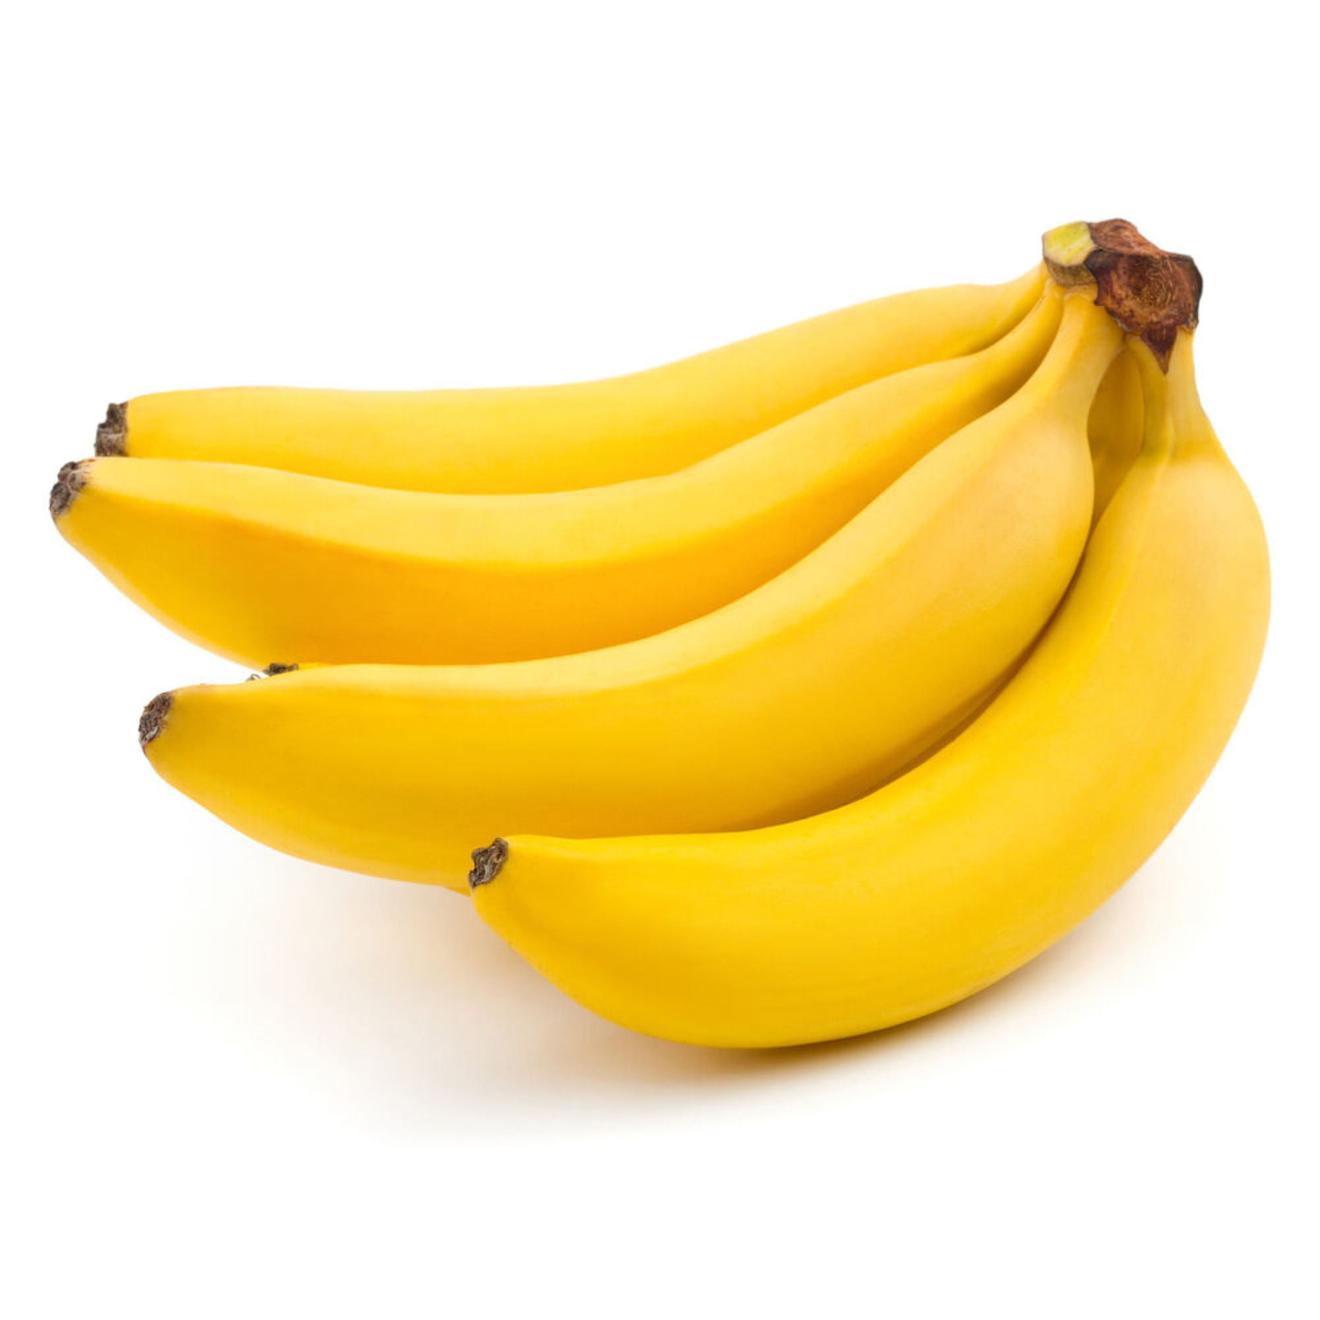 Oferta de Banana seleccion x kg. por $1499 en Carrefour